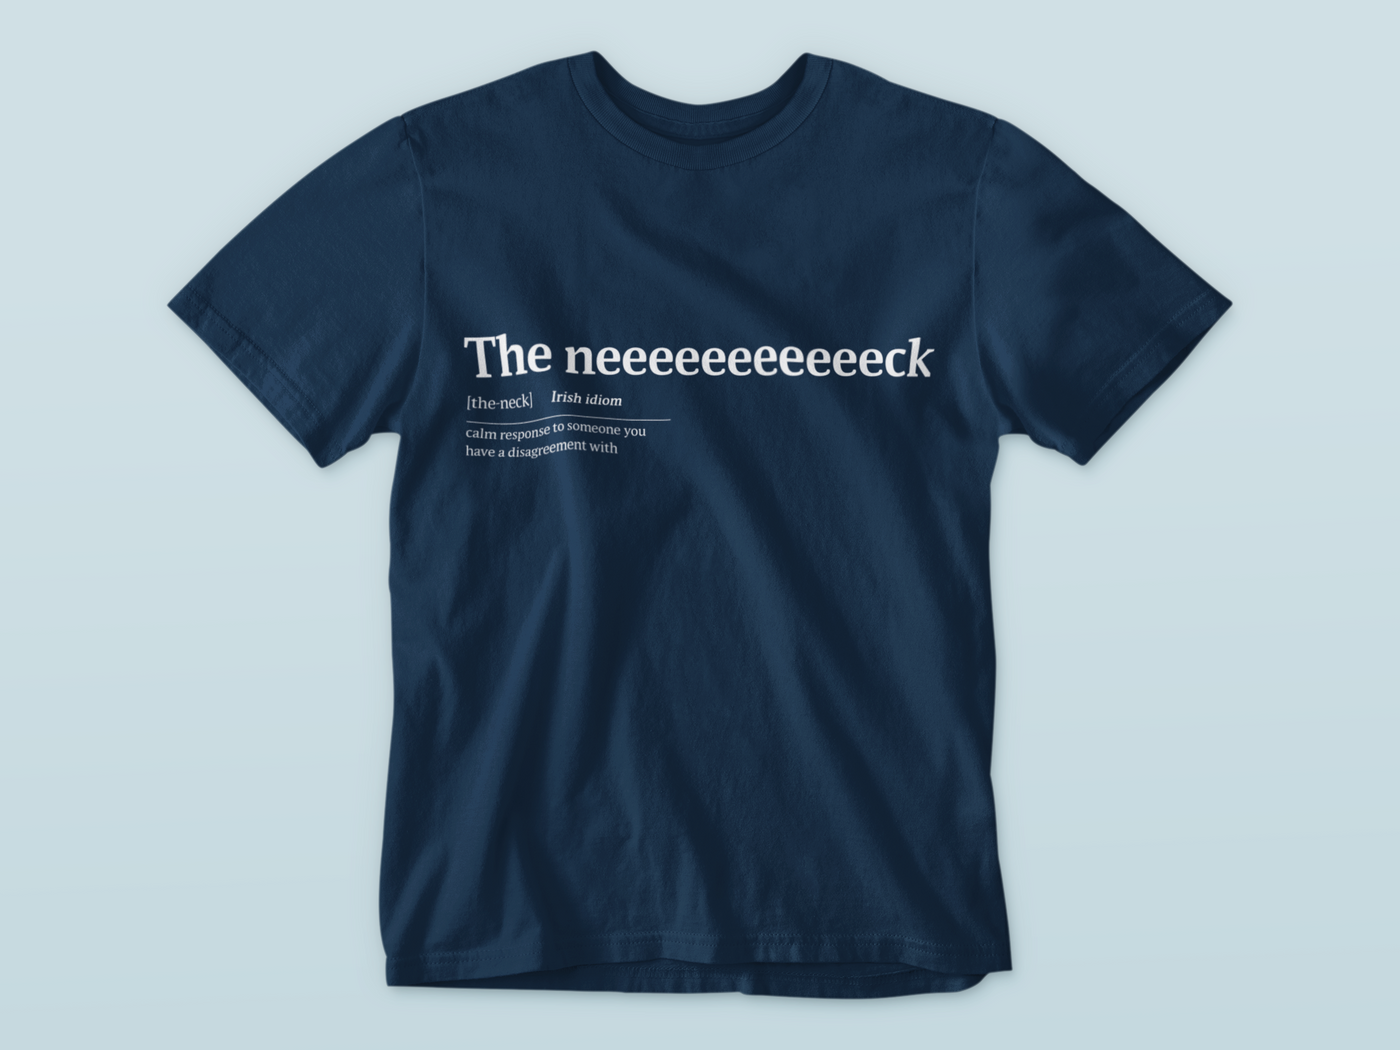 The Neeeeeeeck - Premium WWN T-shirt